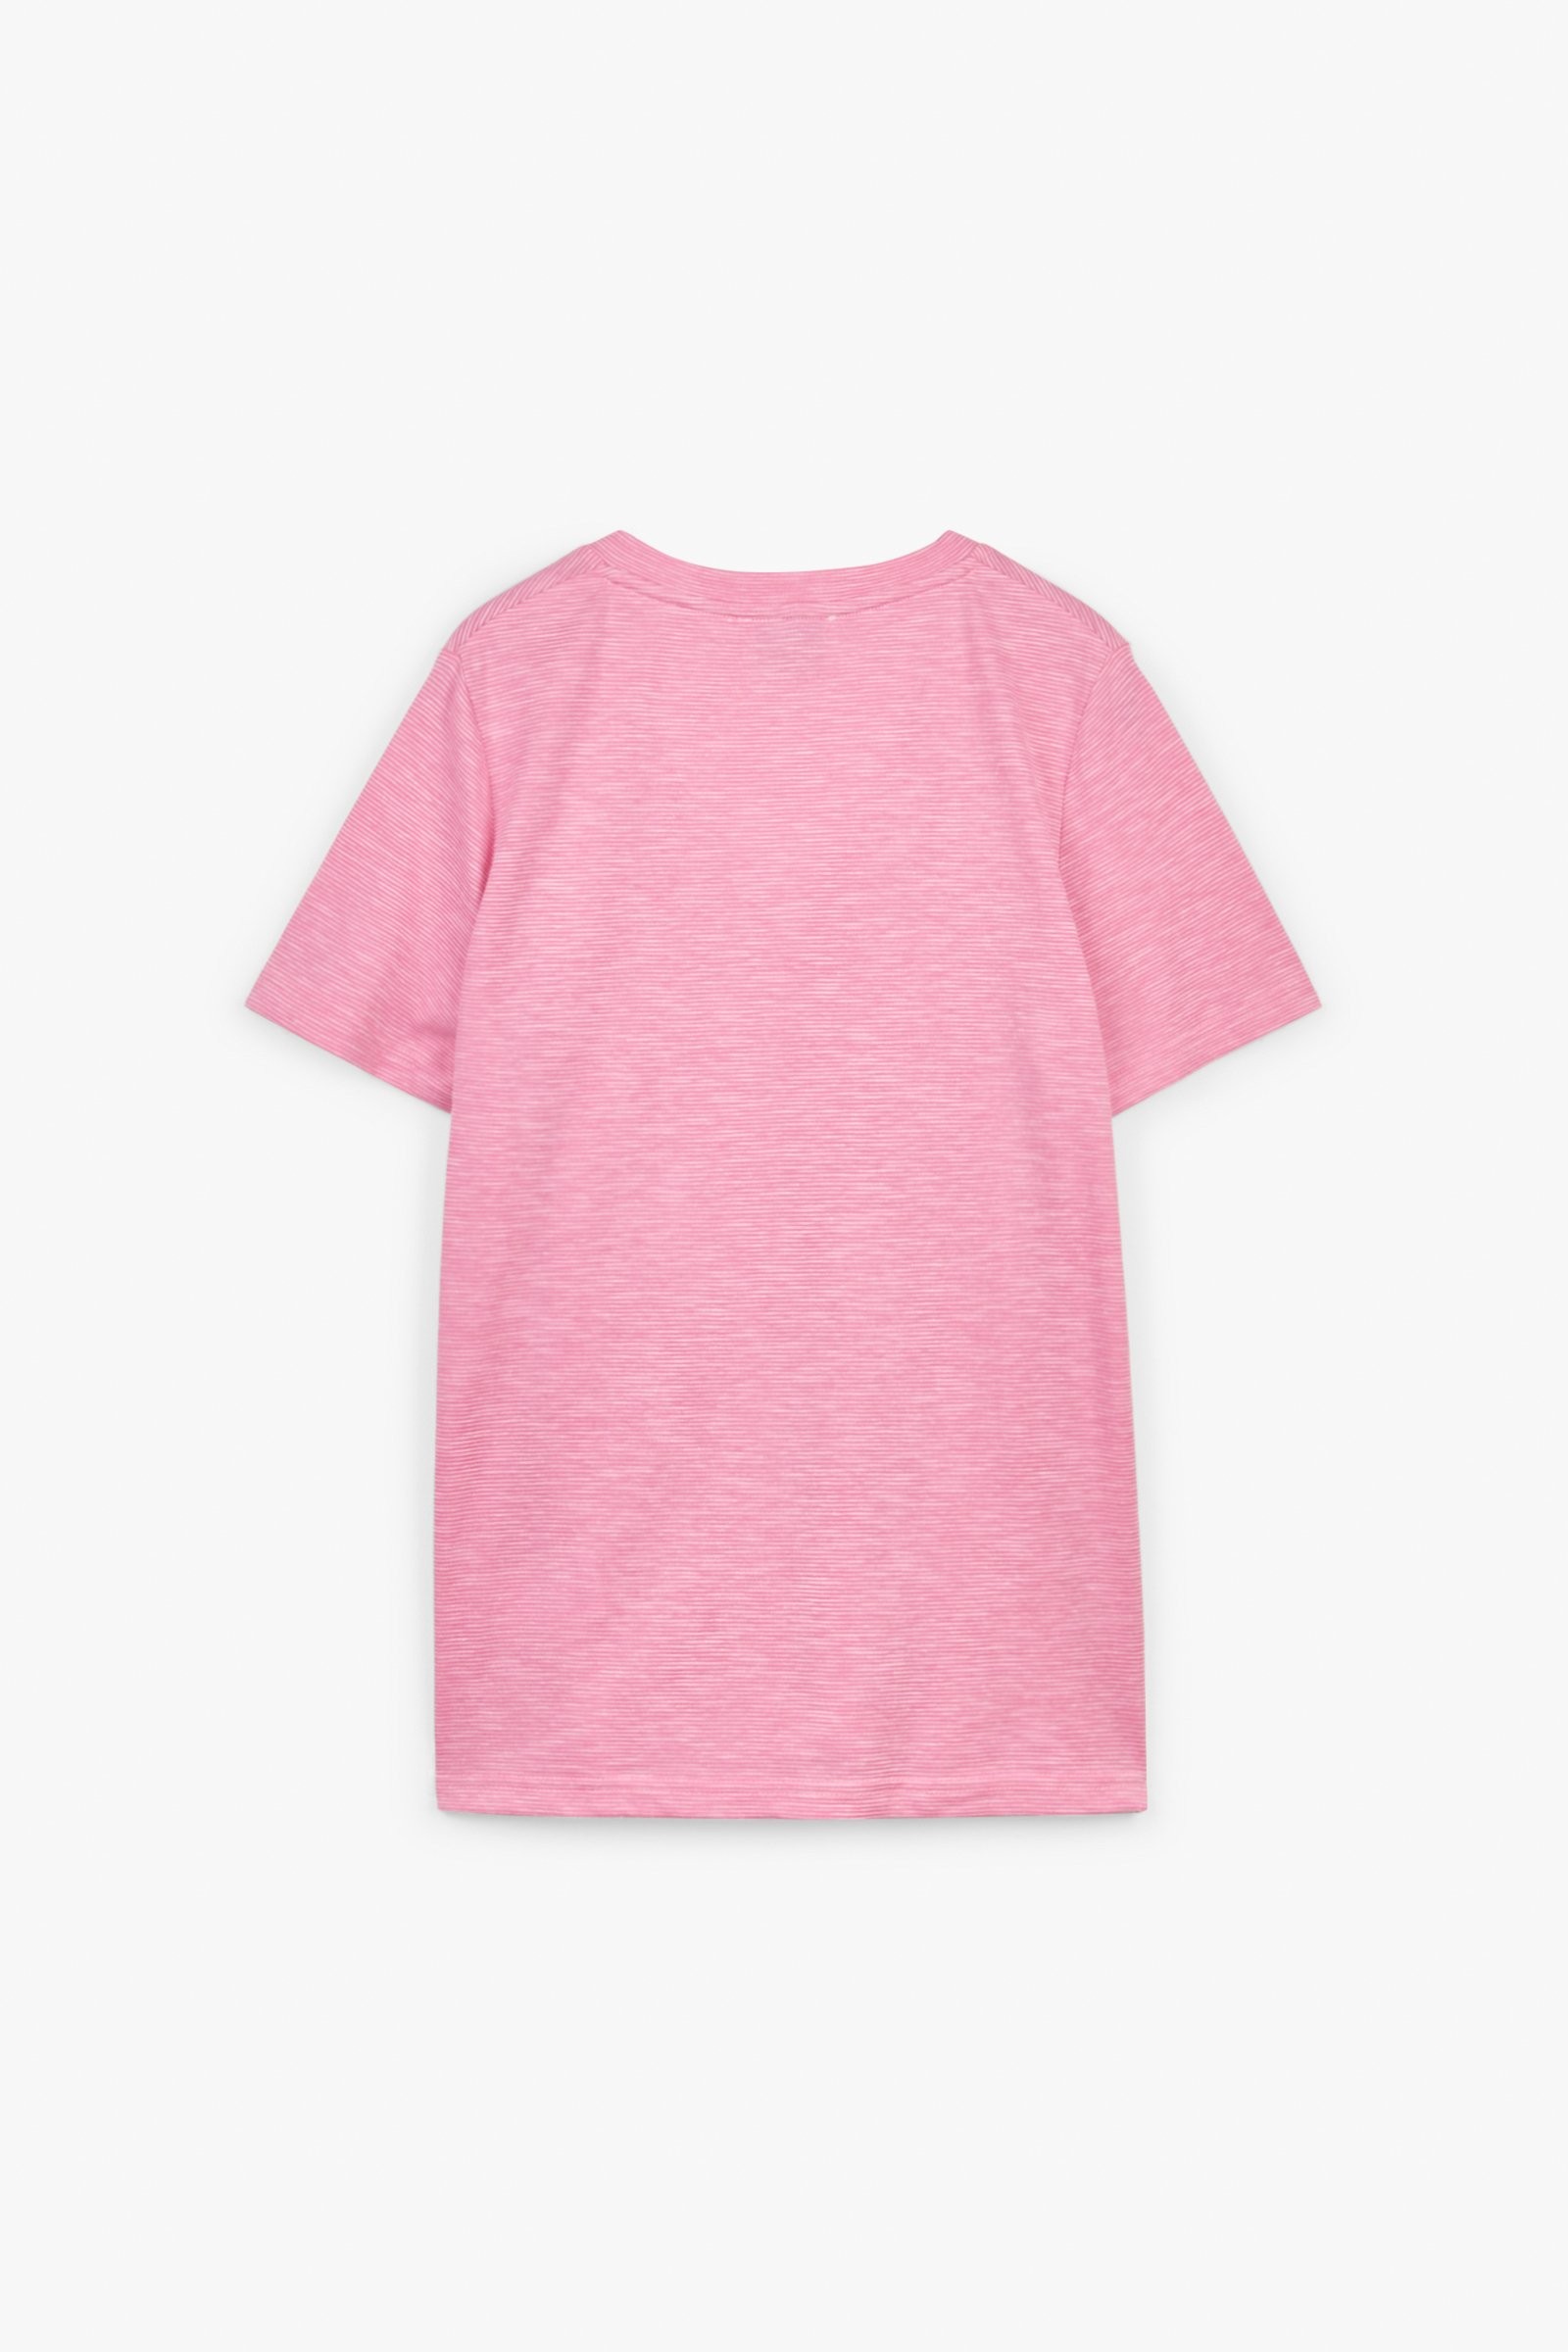 CKS Dames - NEBONY - t-shirt korte mouwen - lichtroze